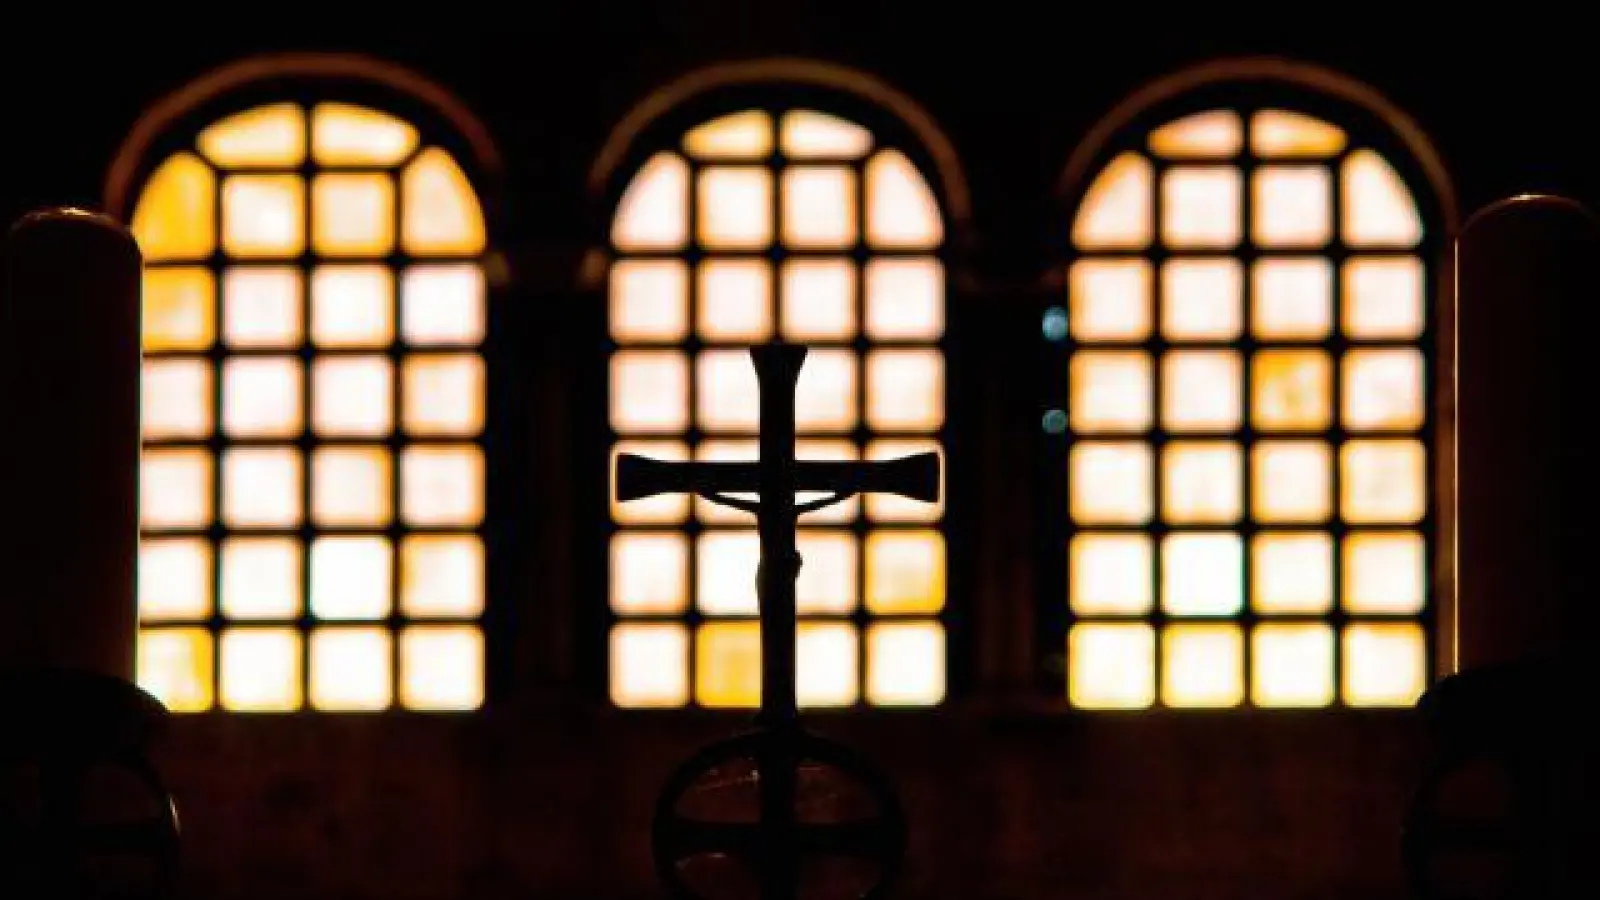 Die holprige bis fehlende Aufarbeitung   der Missbrauchsfälle erzürnt viele Katholiken. Zugleich wünschen sich manche eine Modernisierung ihrer Kirche, während andere deren traditionelles Verständnis beibehalten wollen. 	Foto: Pixabay (Foto: Pixabay)